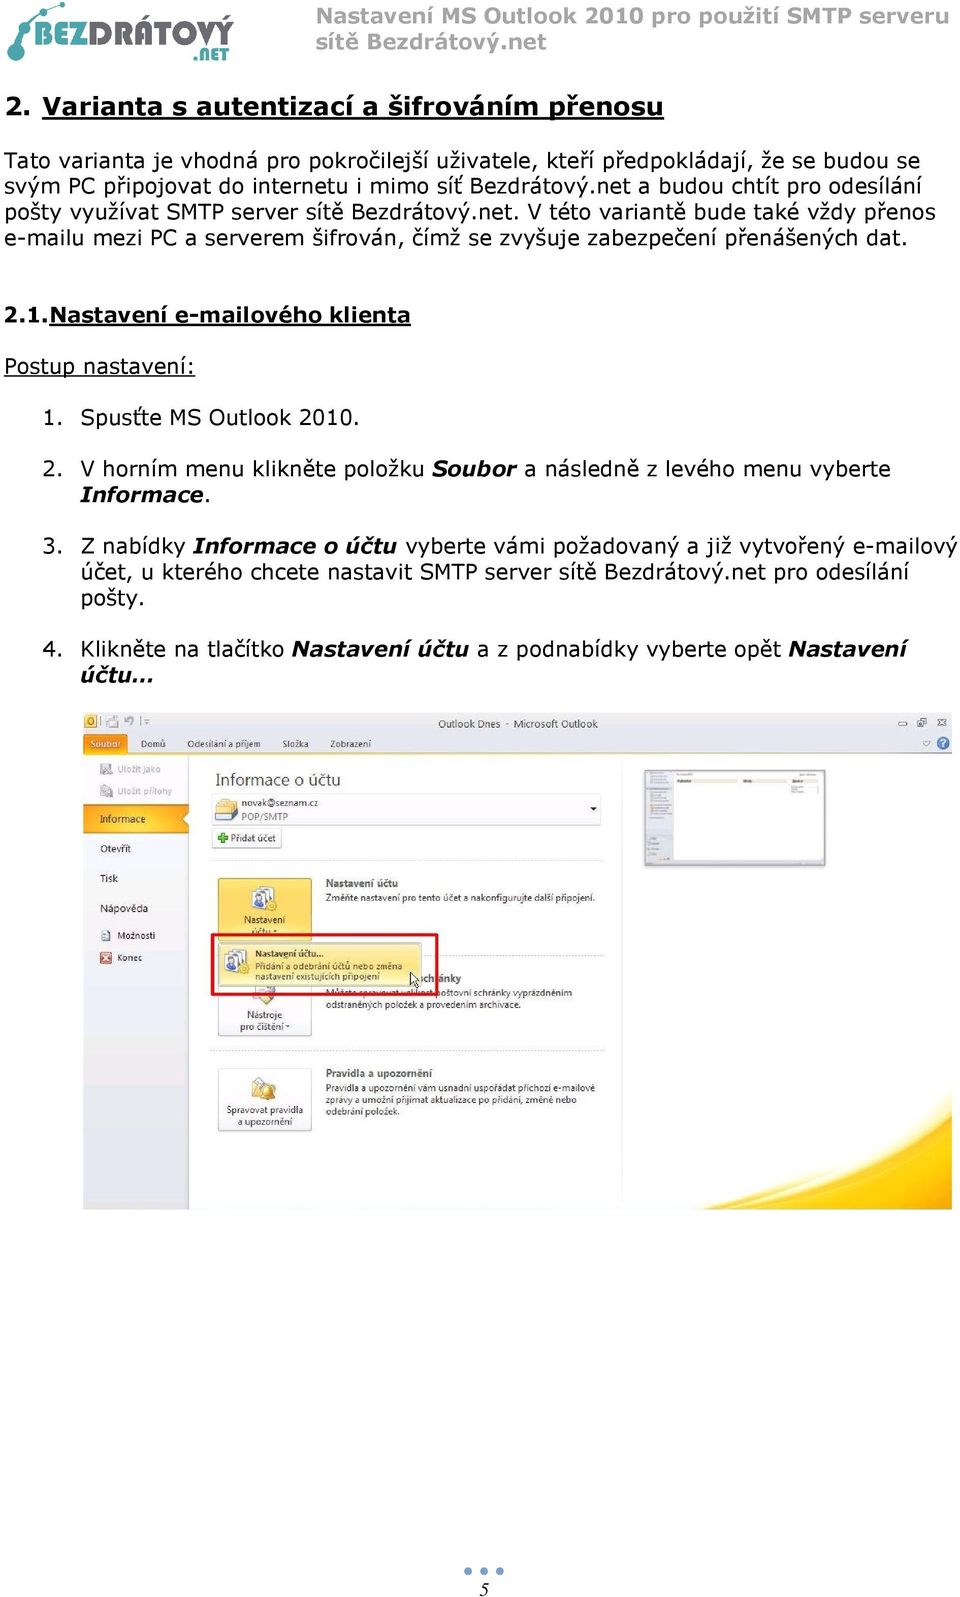 Nastavení e-mailového klienta Postup nastavení: 1. Spusťte MS Outlook 2010. 2. V horním menu klikněte položku Soubor a následně z levého menu vyberte Informace. 3.